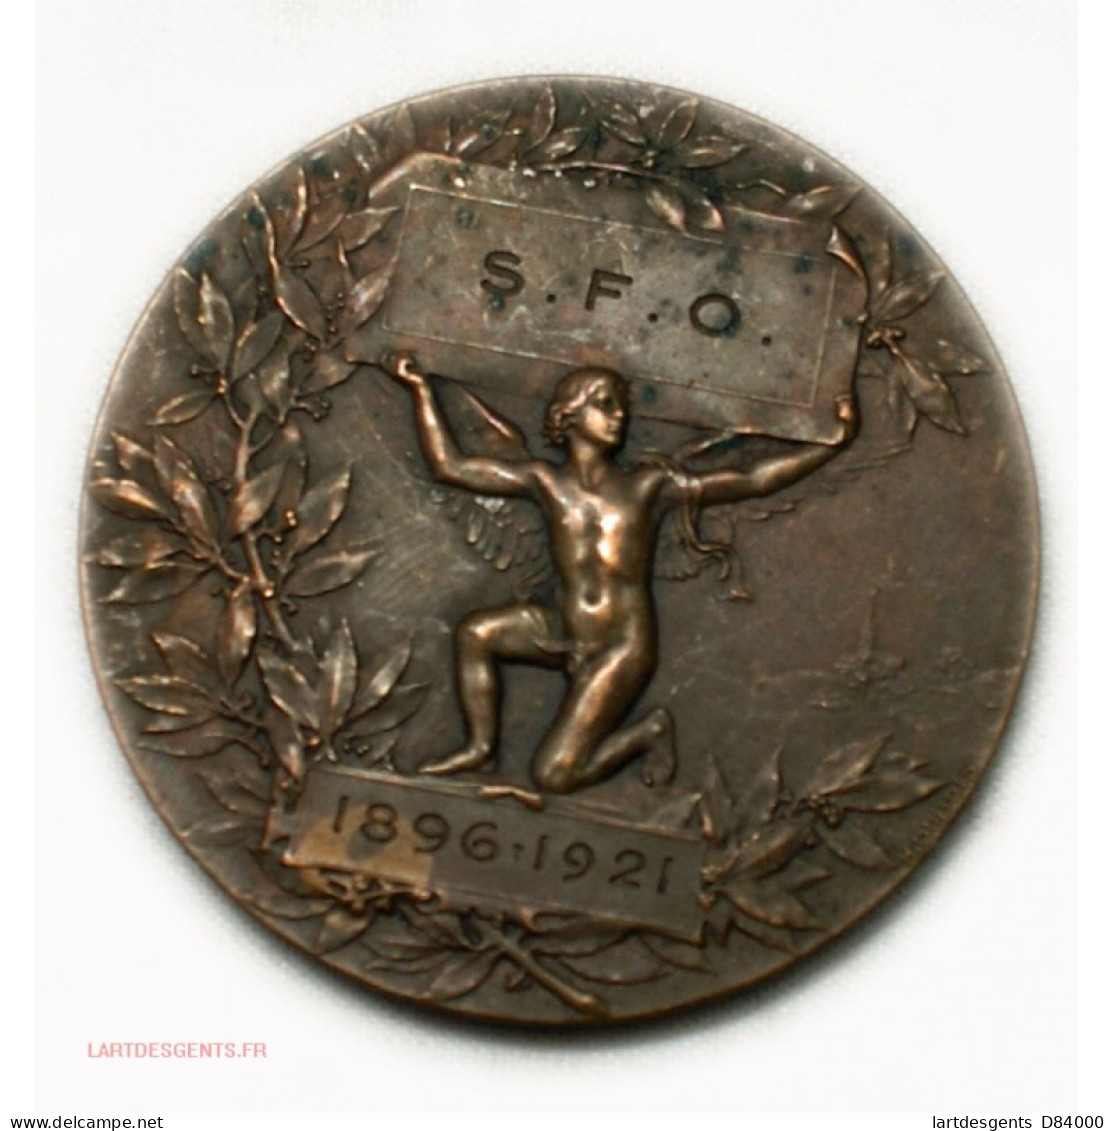 Médaille S.F.O 1896-1921 Par H. DUBOIS - Royaux / De Noblesse